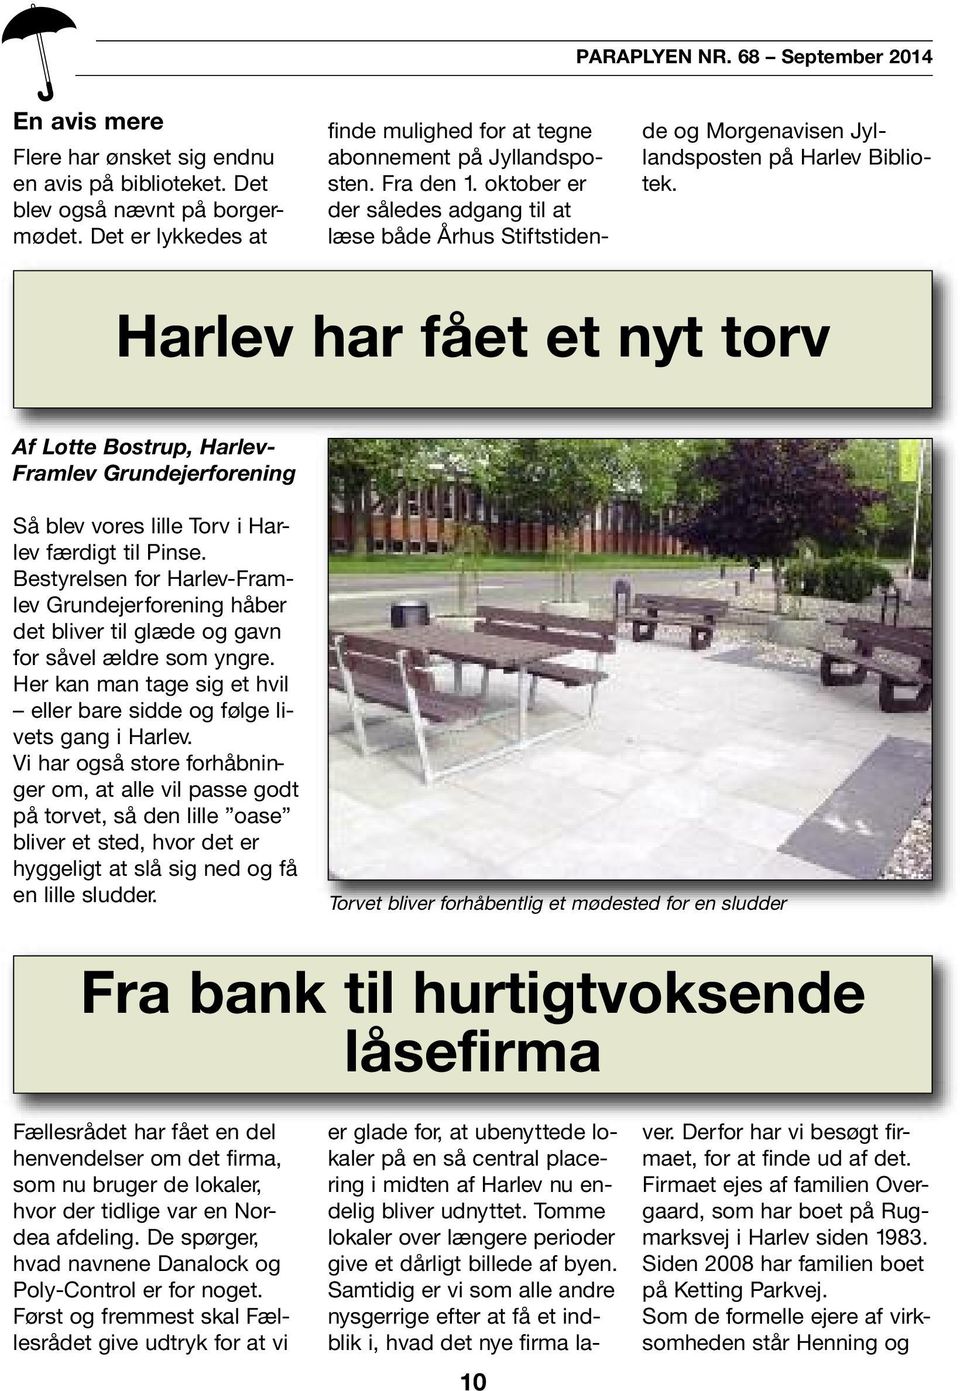 oktober er der således adgang til at læse både Århus Stiftsti dende og Morgenavisen Jyllands po sten på Harlev Bibliotek.